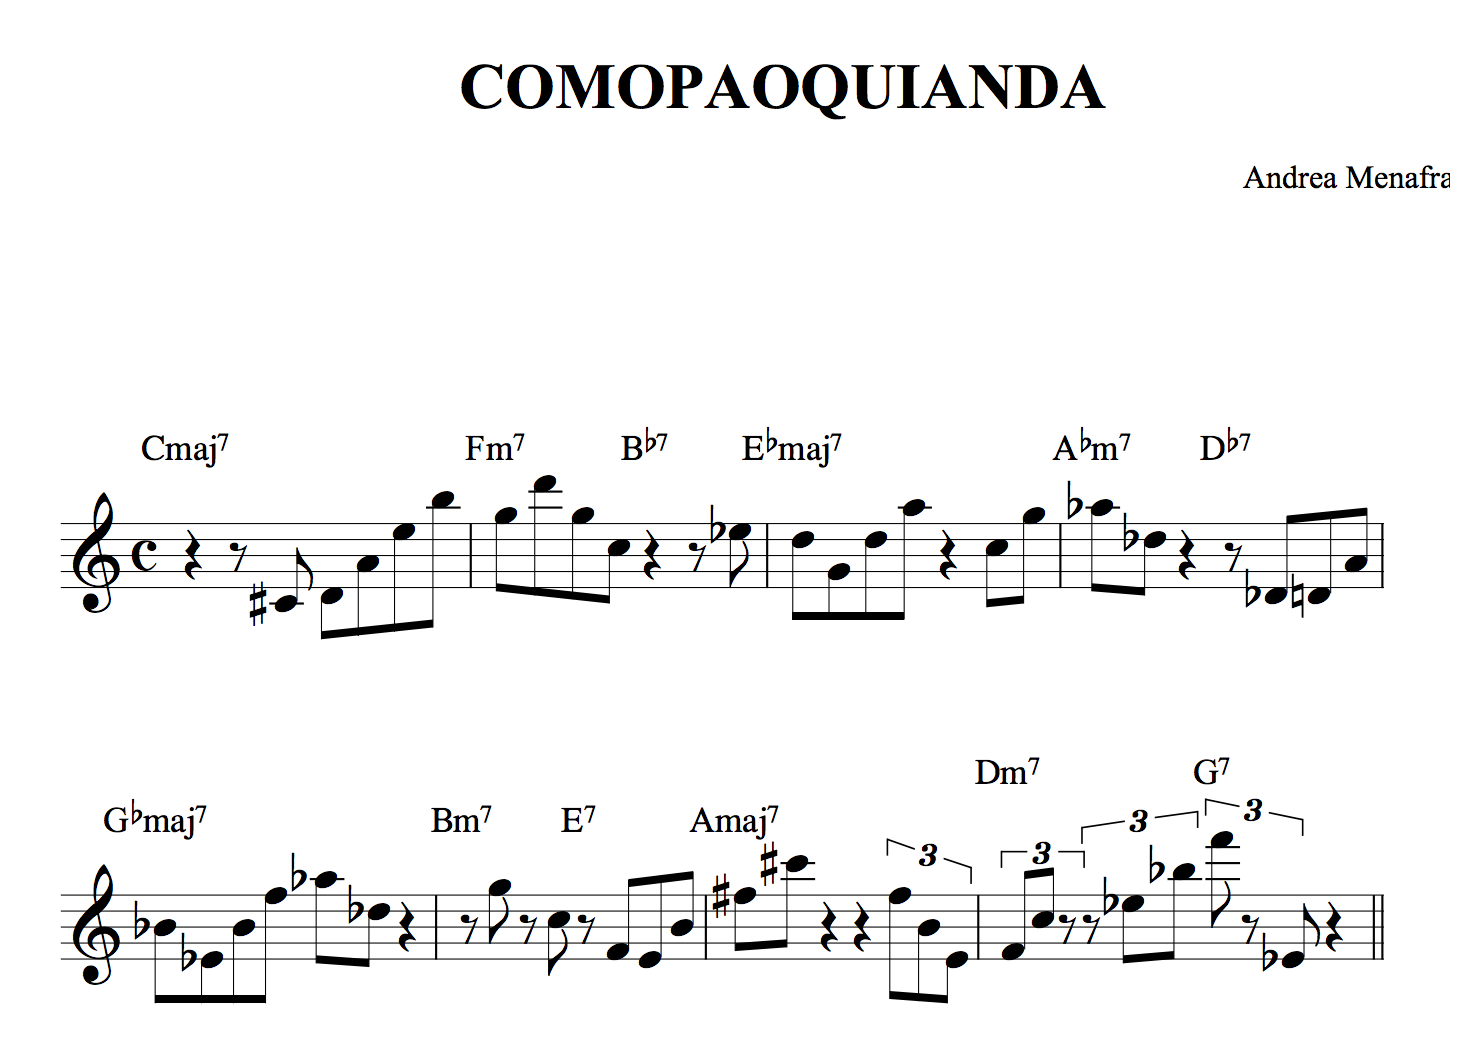 Comopaoquianda tratto dal CD Duodegradabile di Andrea Menafra